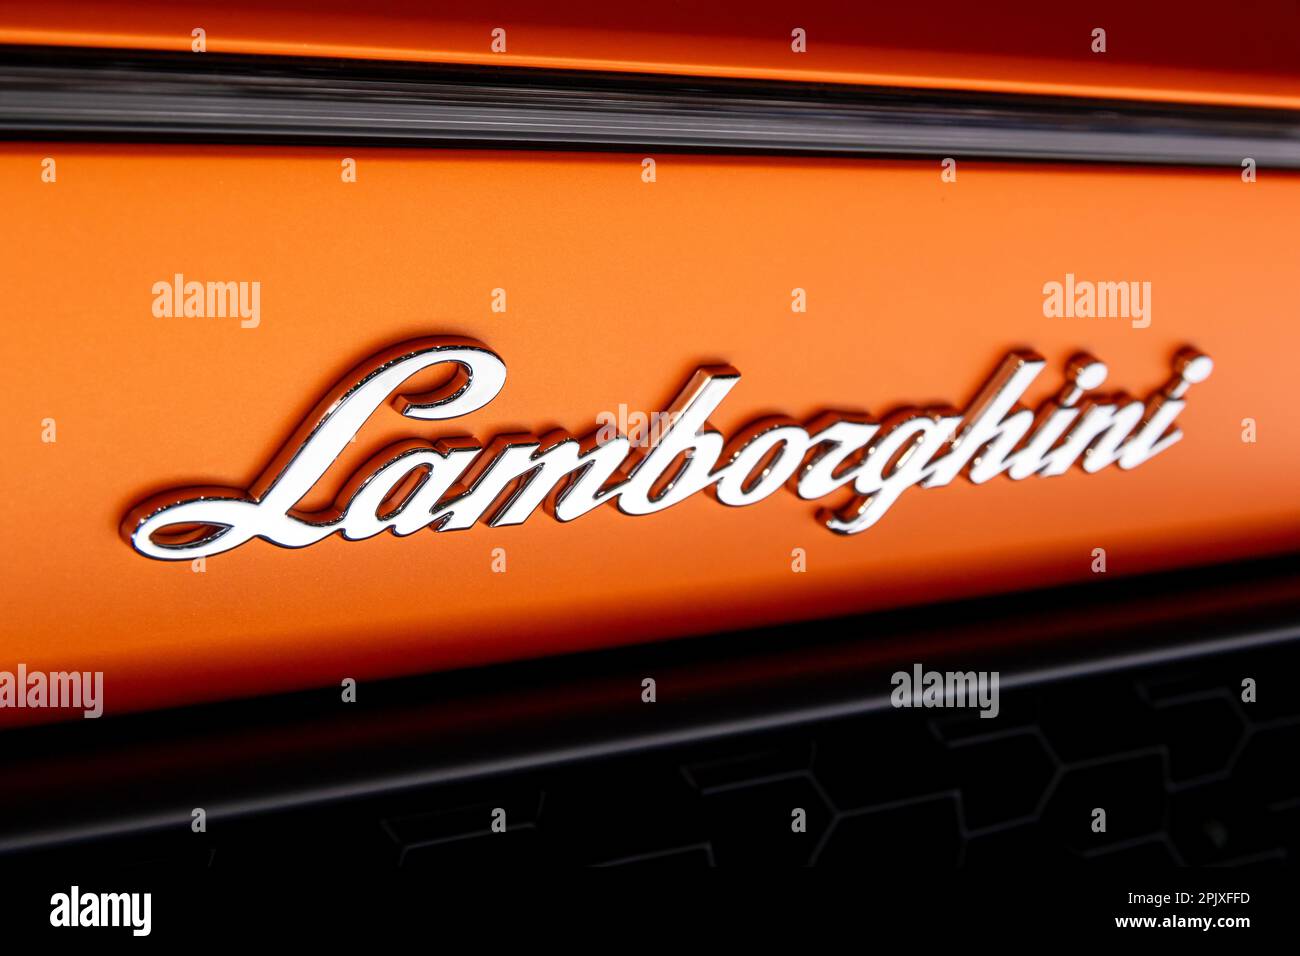 Logo Lamborghini à l'arrière d'une voiture de sport Lamborghini Huracan Performante présentée au salon de l'automobile de Genève. Genève, Suisse - 7 mars 2017 Banque D'Images